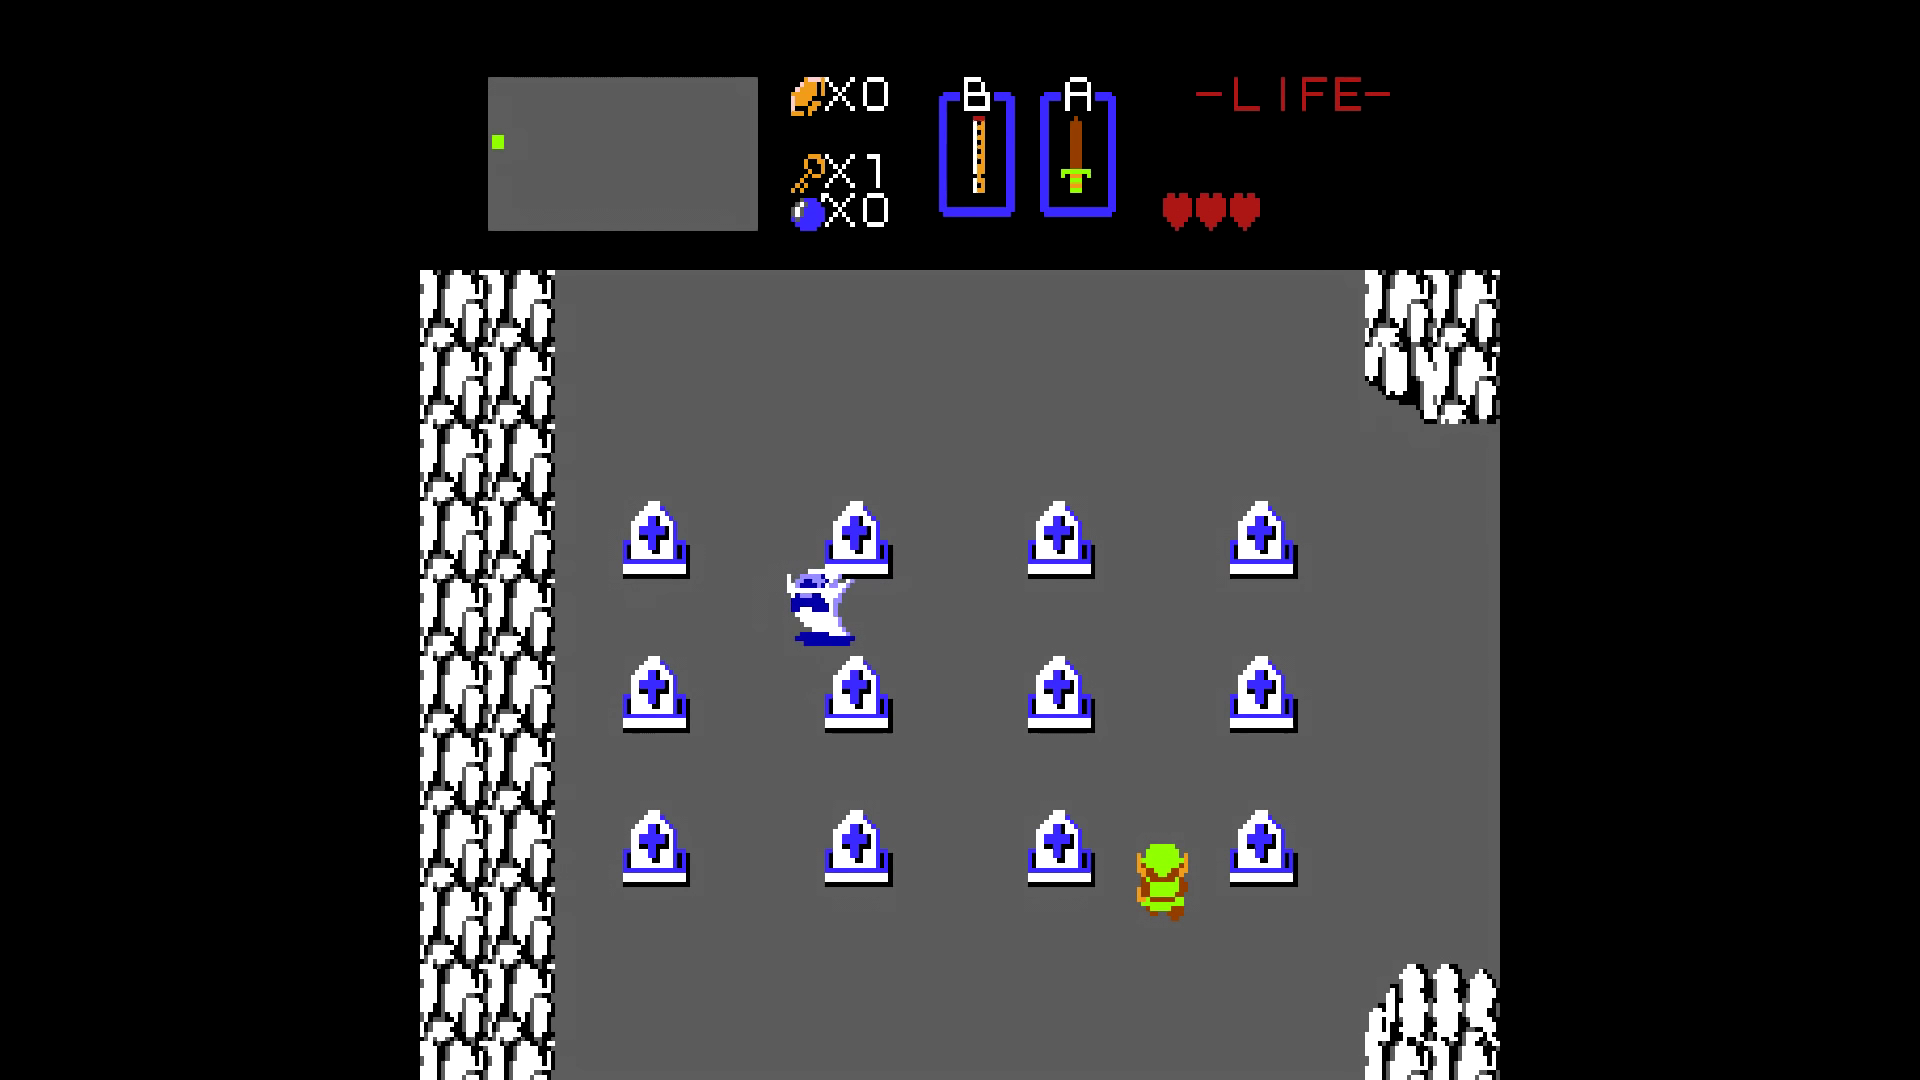 Спидран Legend of Zelda путём манипуляций памятью игры - 4